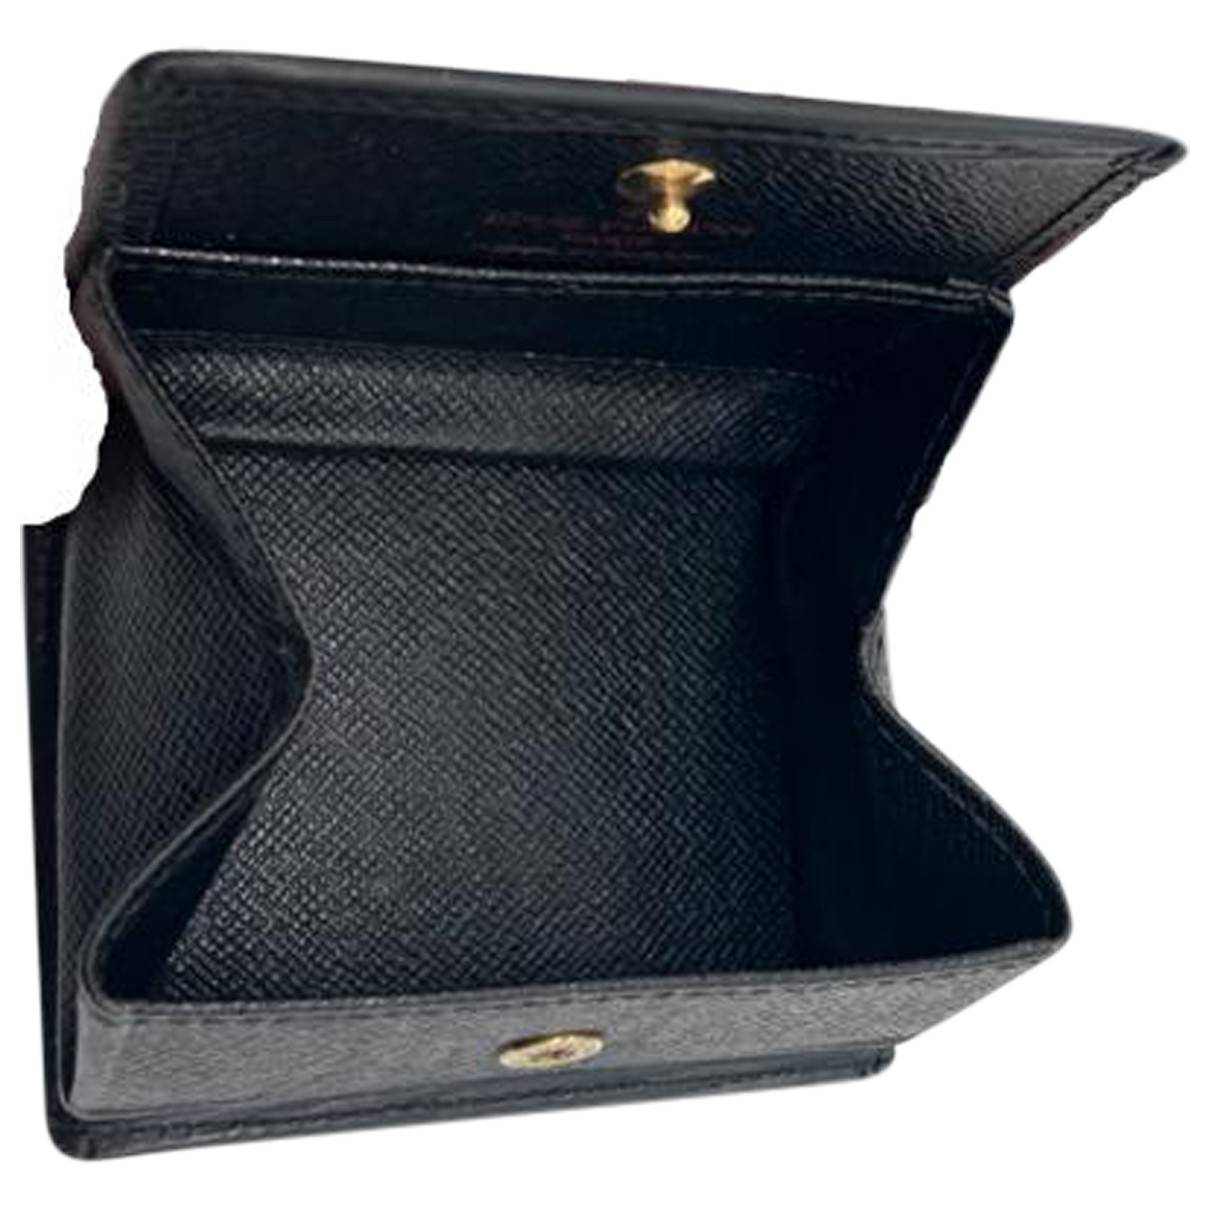 lv black purse small